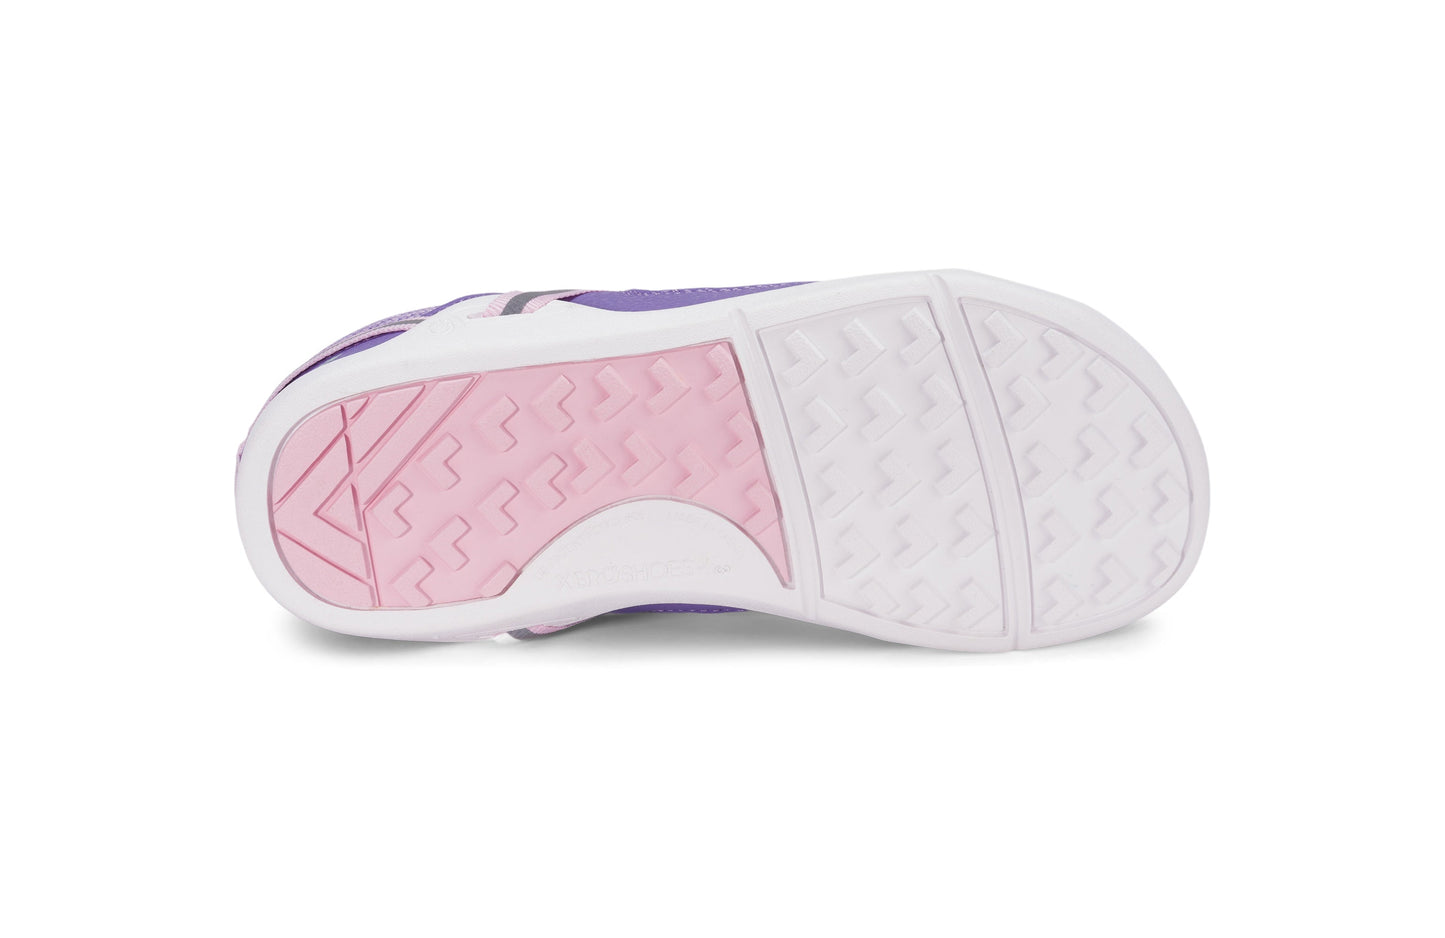 Xero Shoes Prio Kids barfods træningssko/sneakers til børn i farven lilac / pink, saal